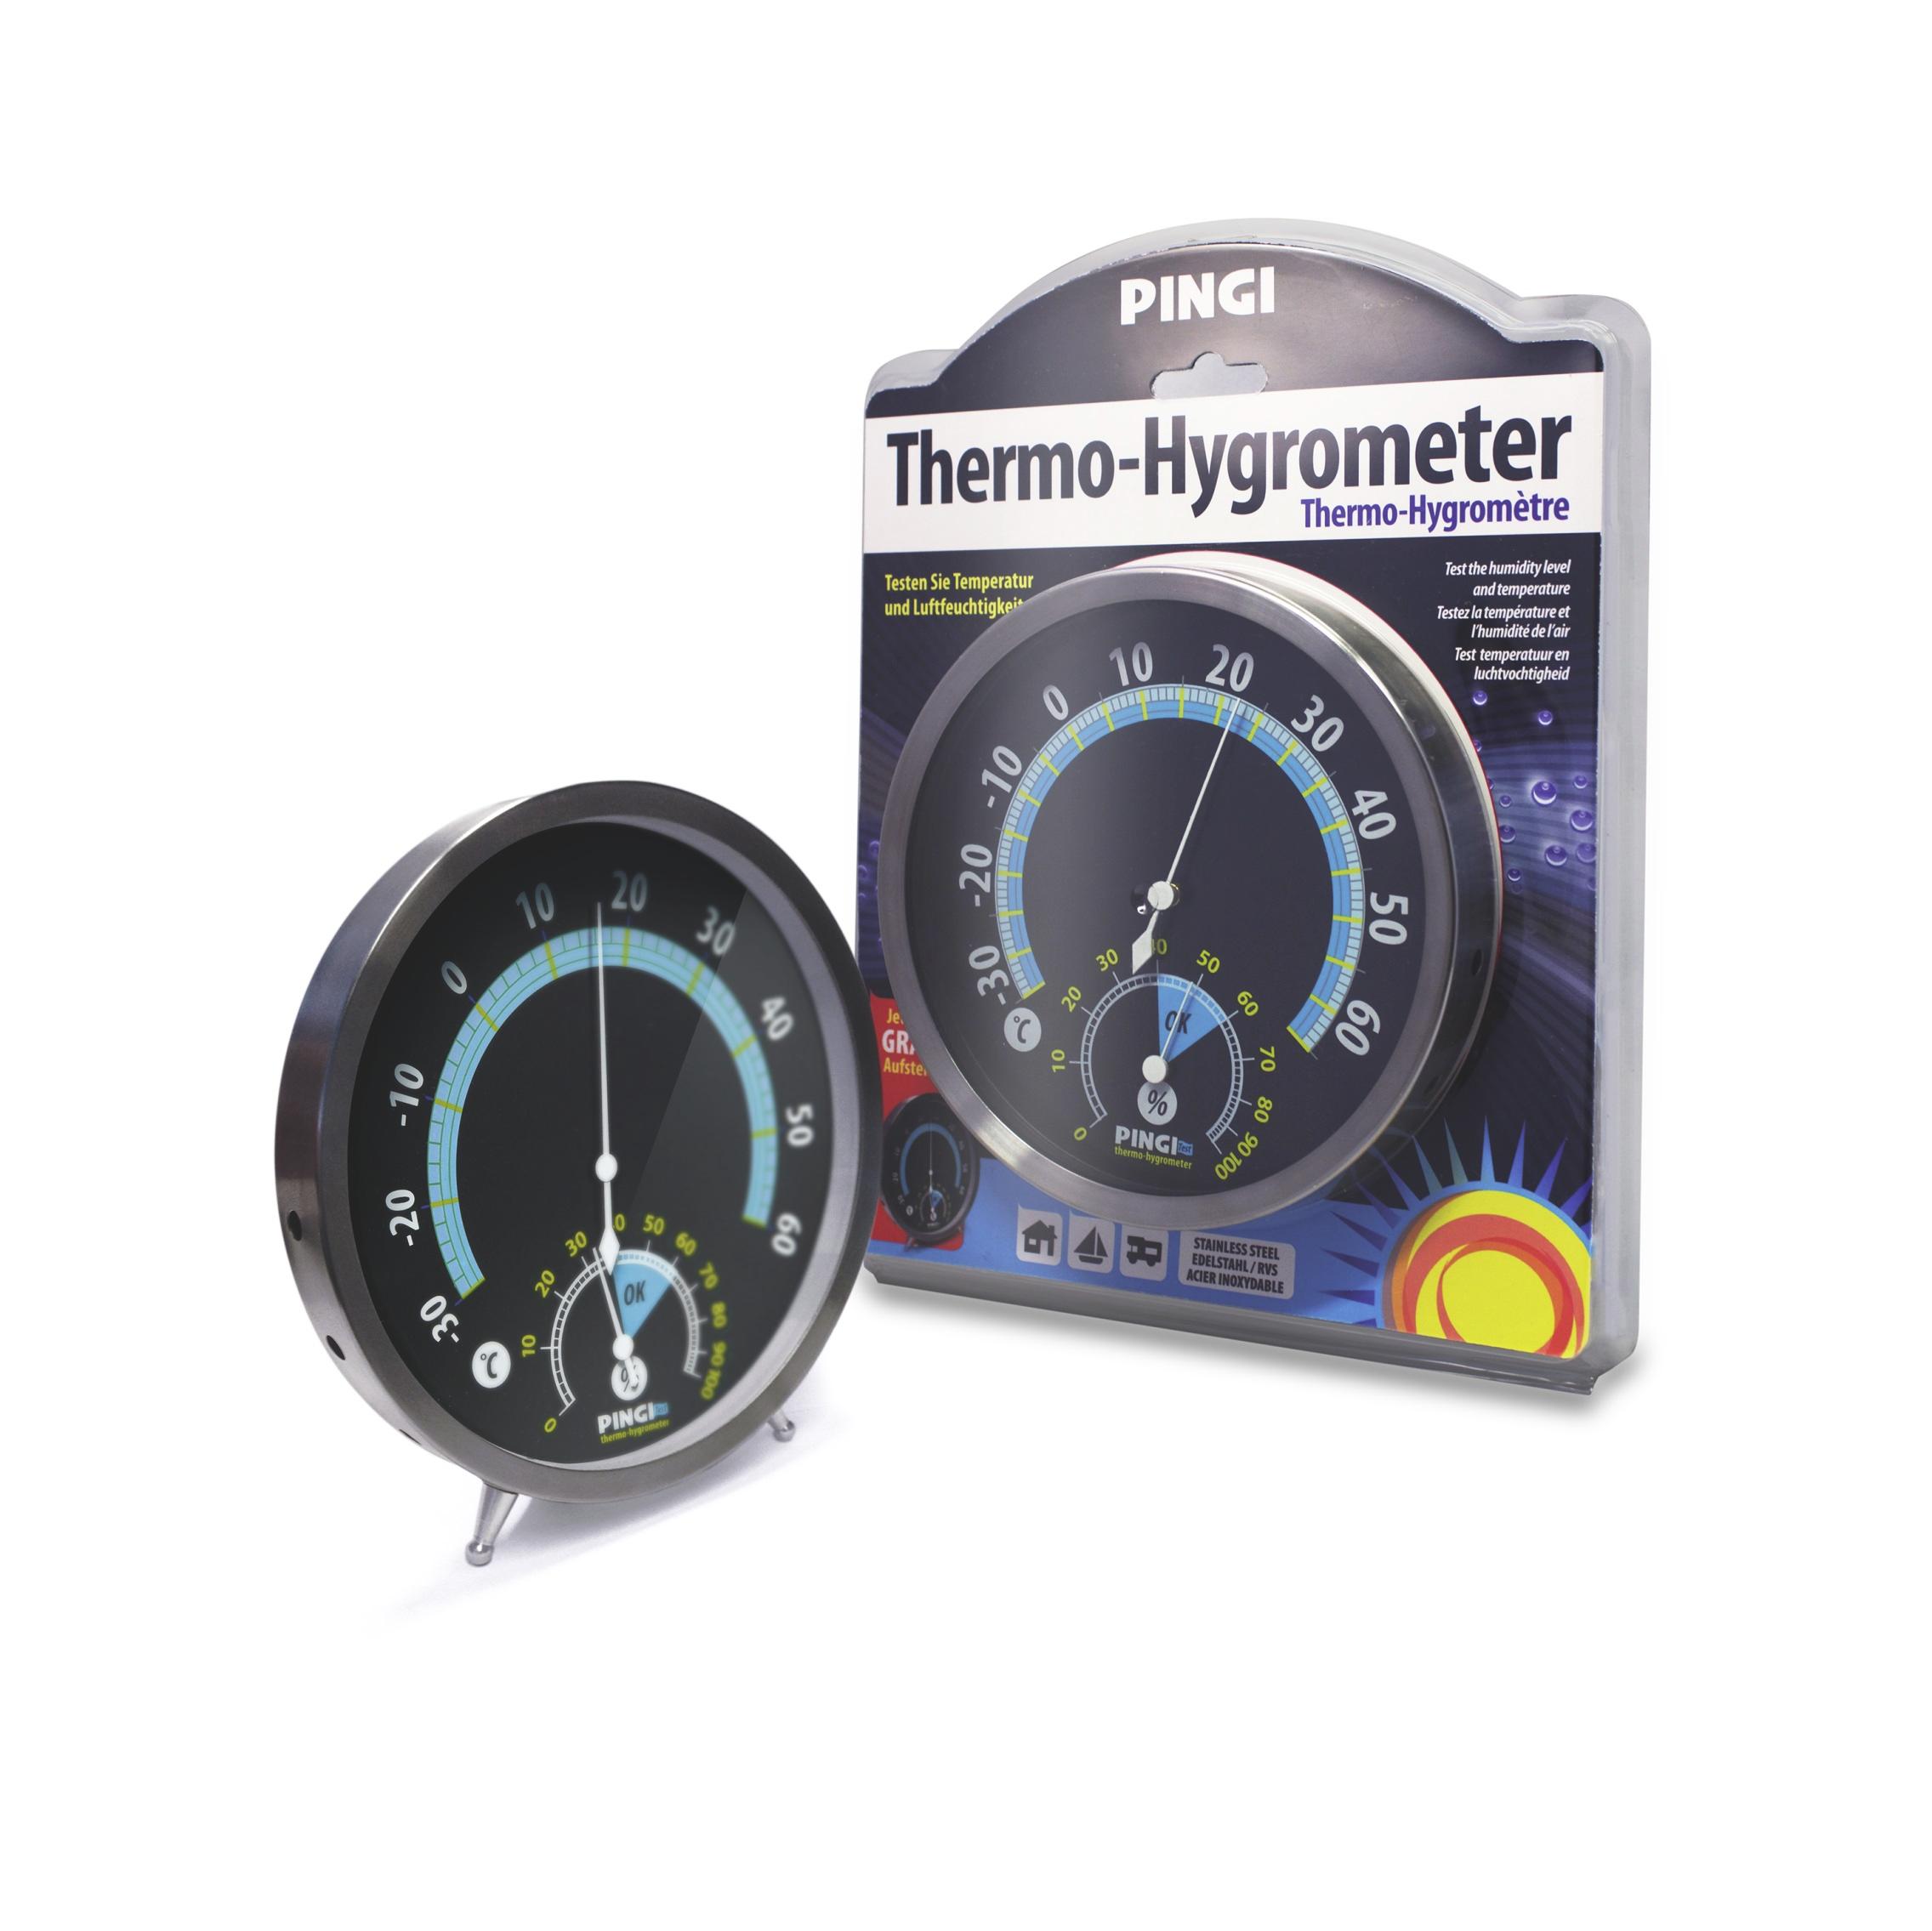 Thermo Hygrometer zwei in eins